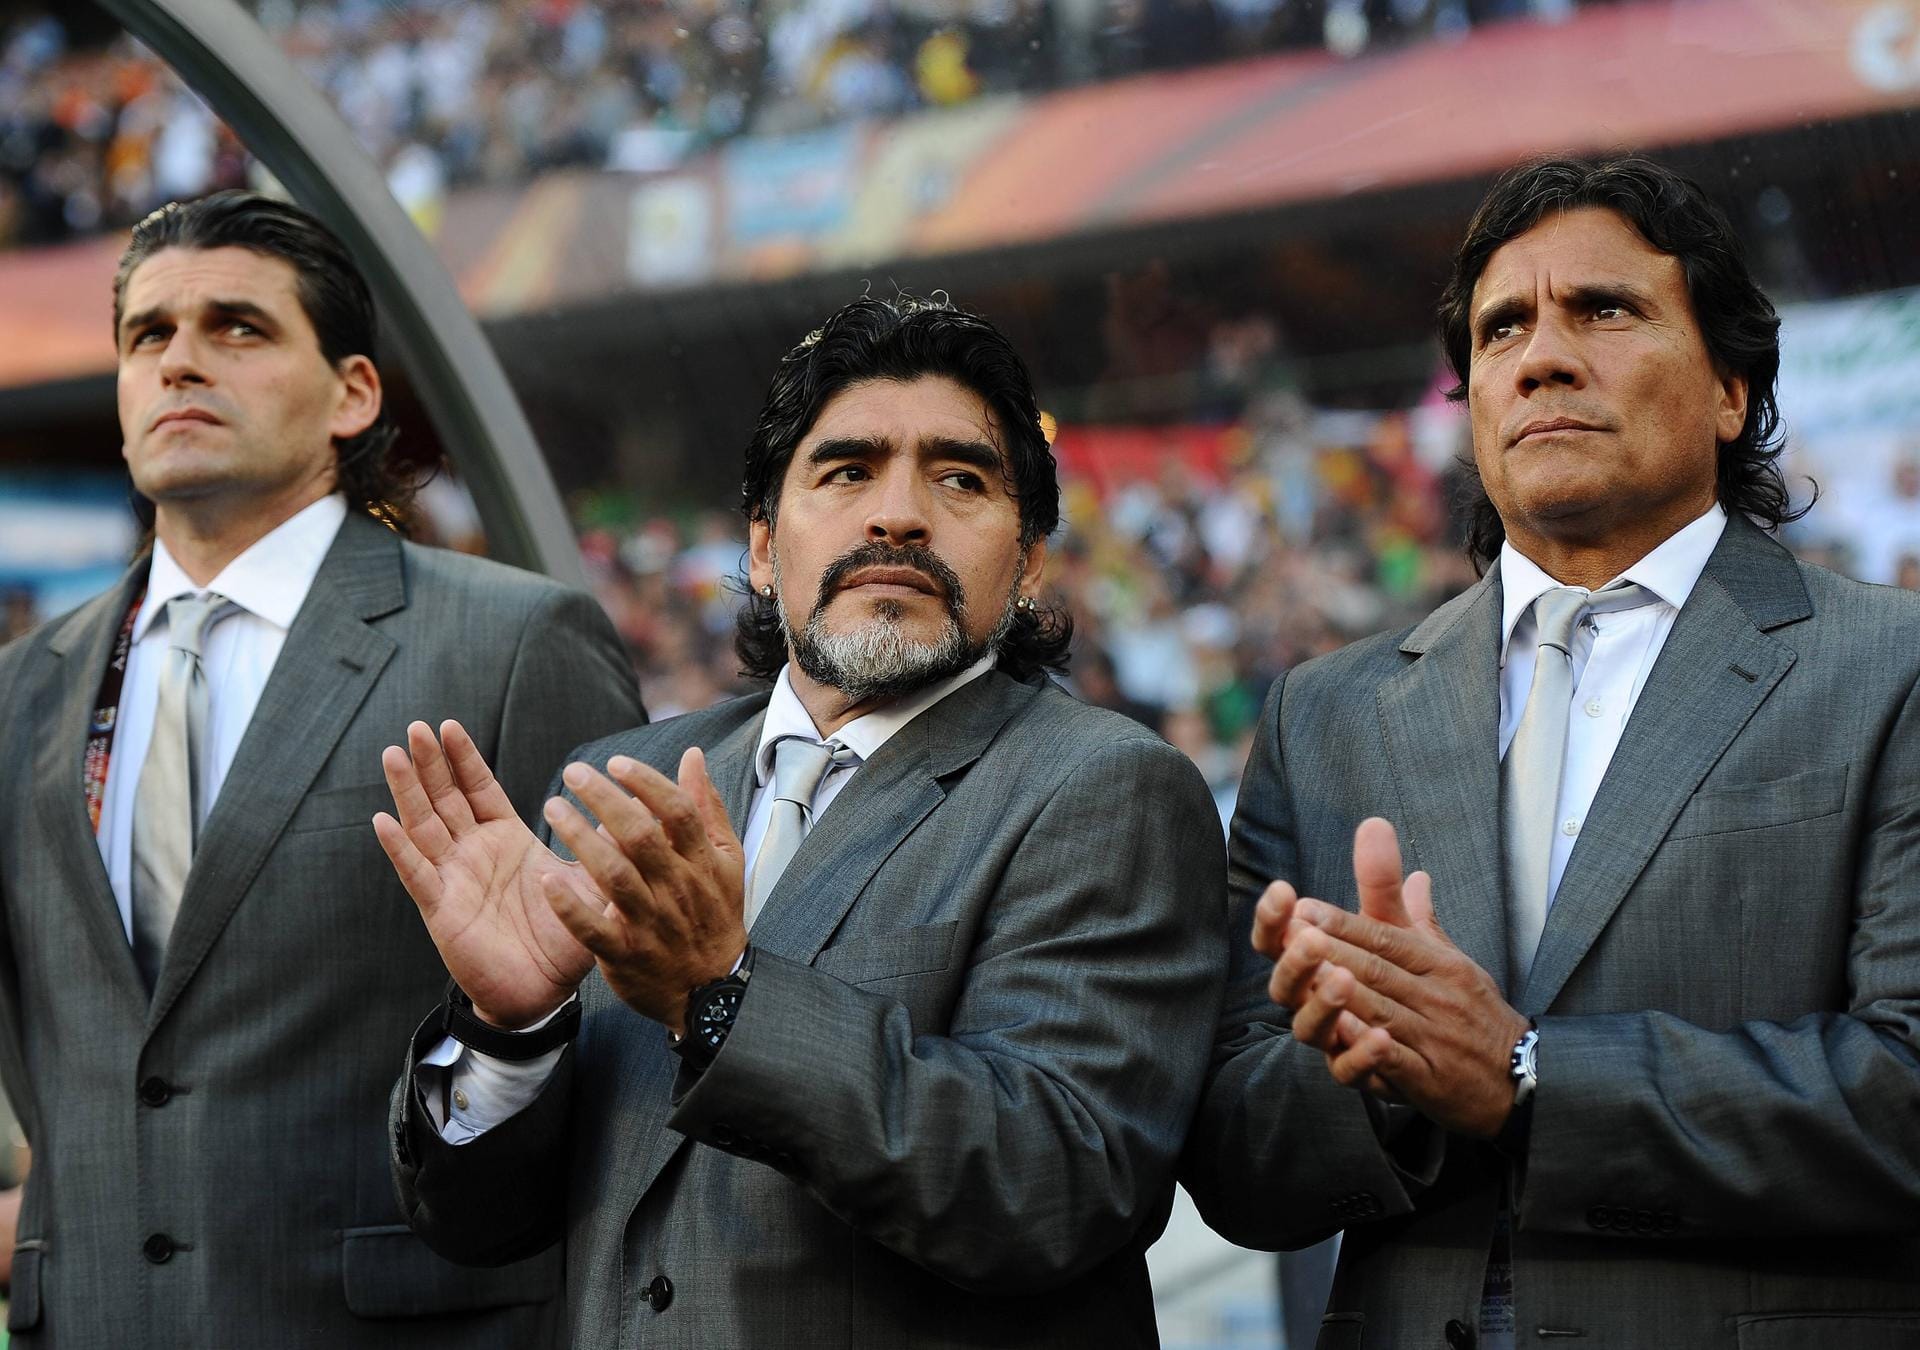 1997 beendete Maradona seine Laufbahn – und feierte im Oktober 2008 ein großes Comeback auf der Fußballbühne, als er das Amt als Nationaltrainer übernahm. Keine zwei Jahre später findet sein Engagement nach dem 0:4 gegen Deutschland bei der WM in Südafrika ein frühes Ende.